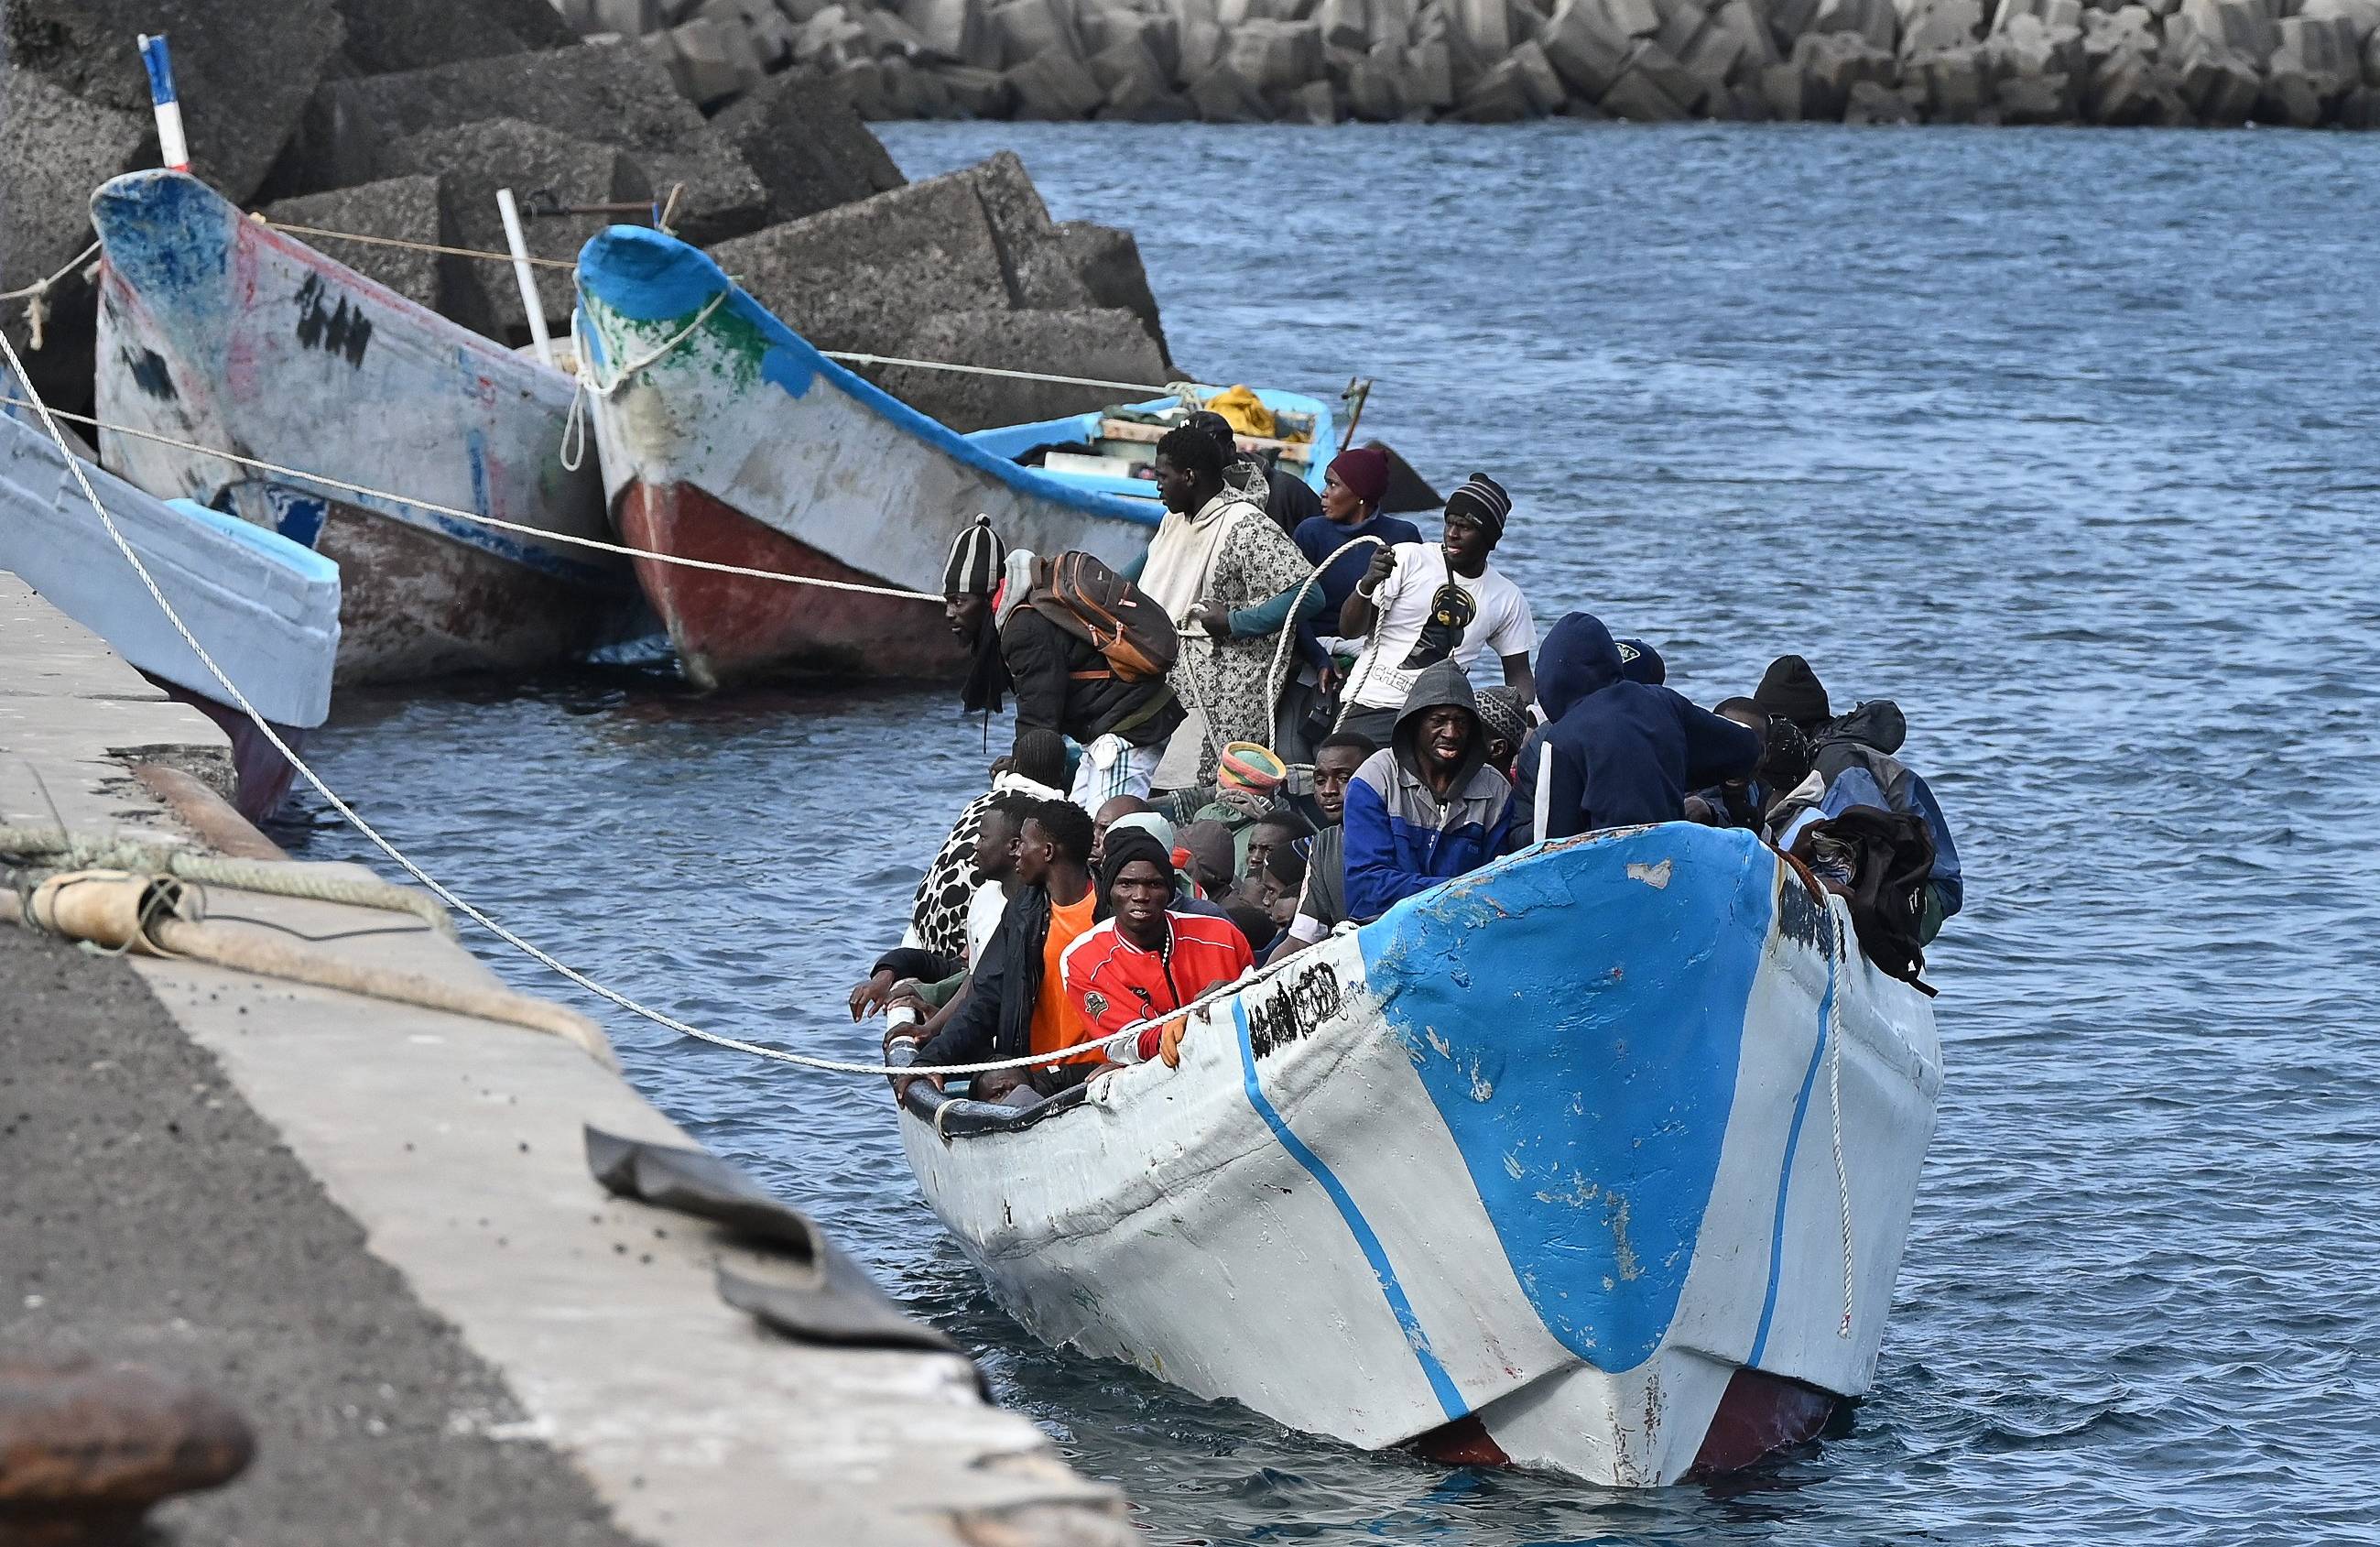 Dobijająca do brzegu łódź pełna migrantów z Afryki. Pakt migracyjny